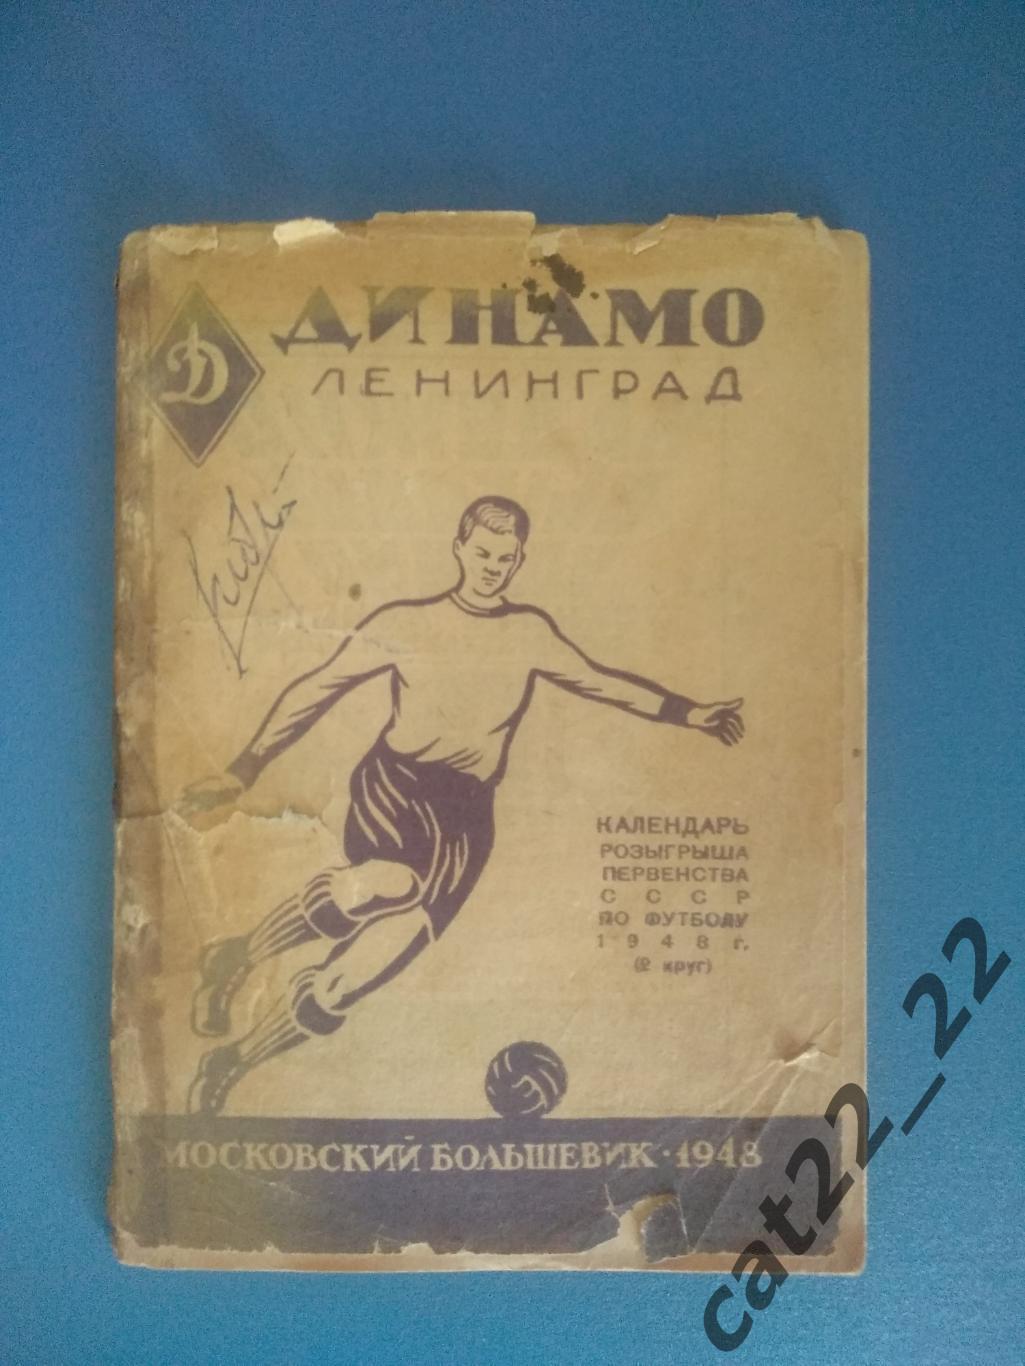 Календарь - справочник: Динамо Ленинград СССР/Россия 1948